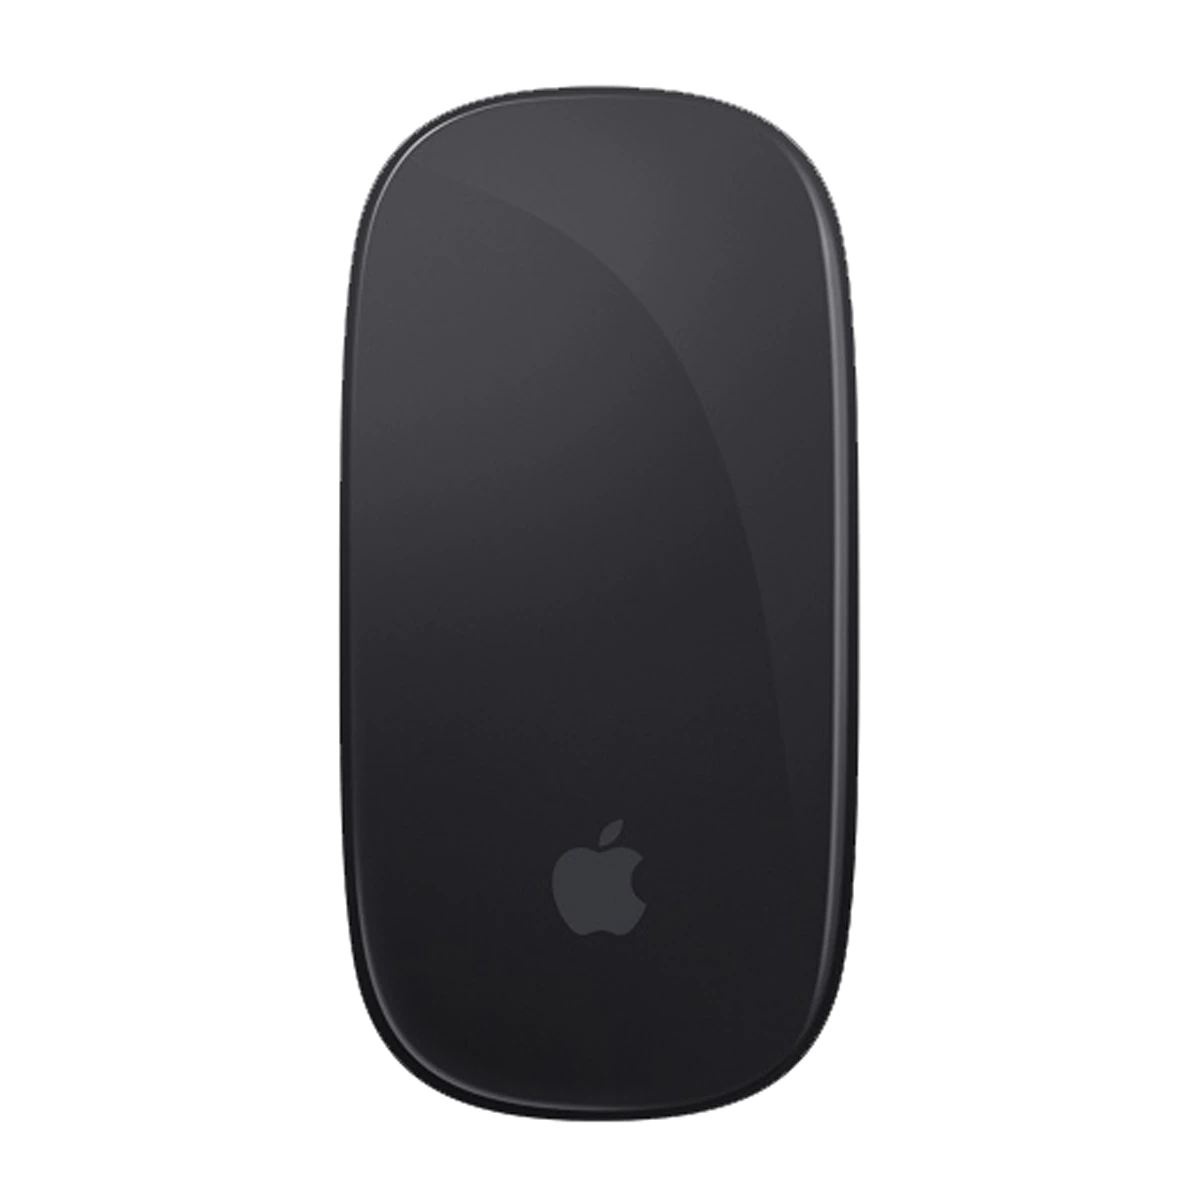 Ratón inalámbrico Apple Magic Mouse 2 Gris espacial